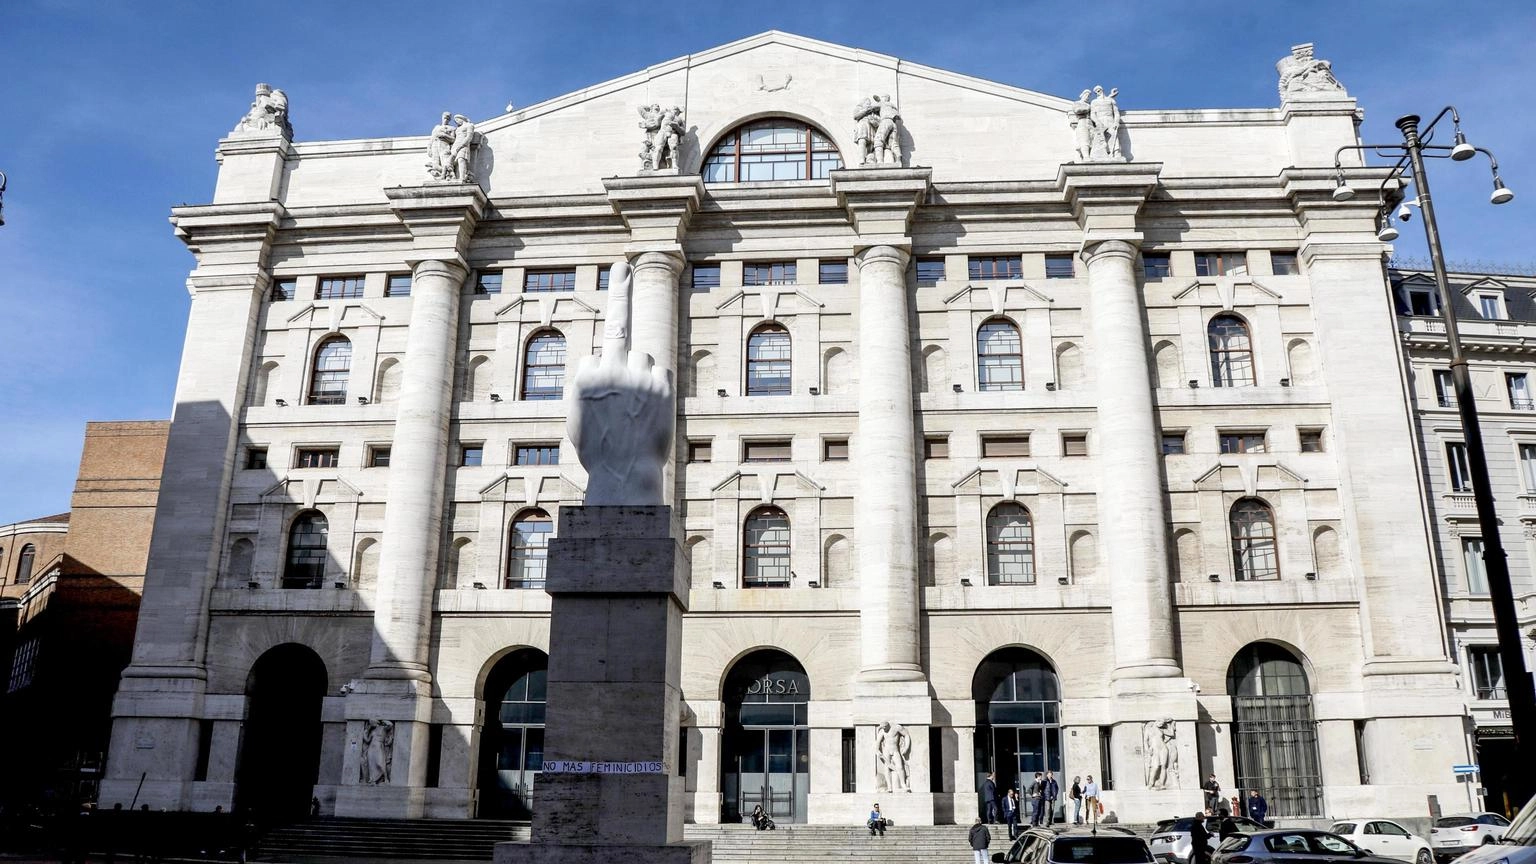 Borsa: Milano apre in marginale rialzo, Ftse Mib +0,01%